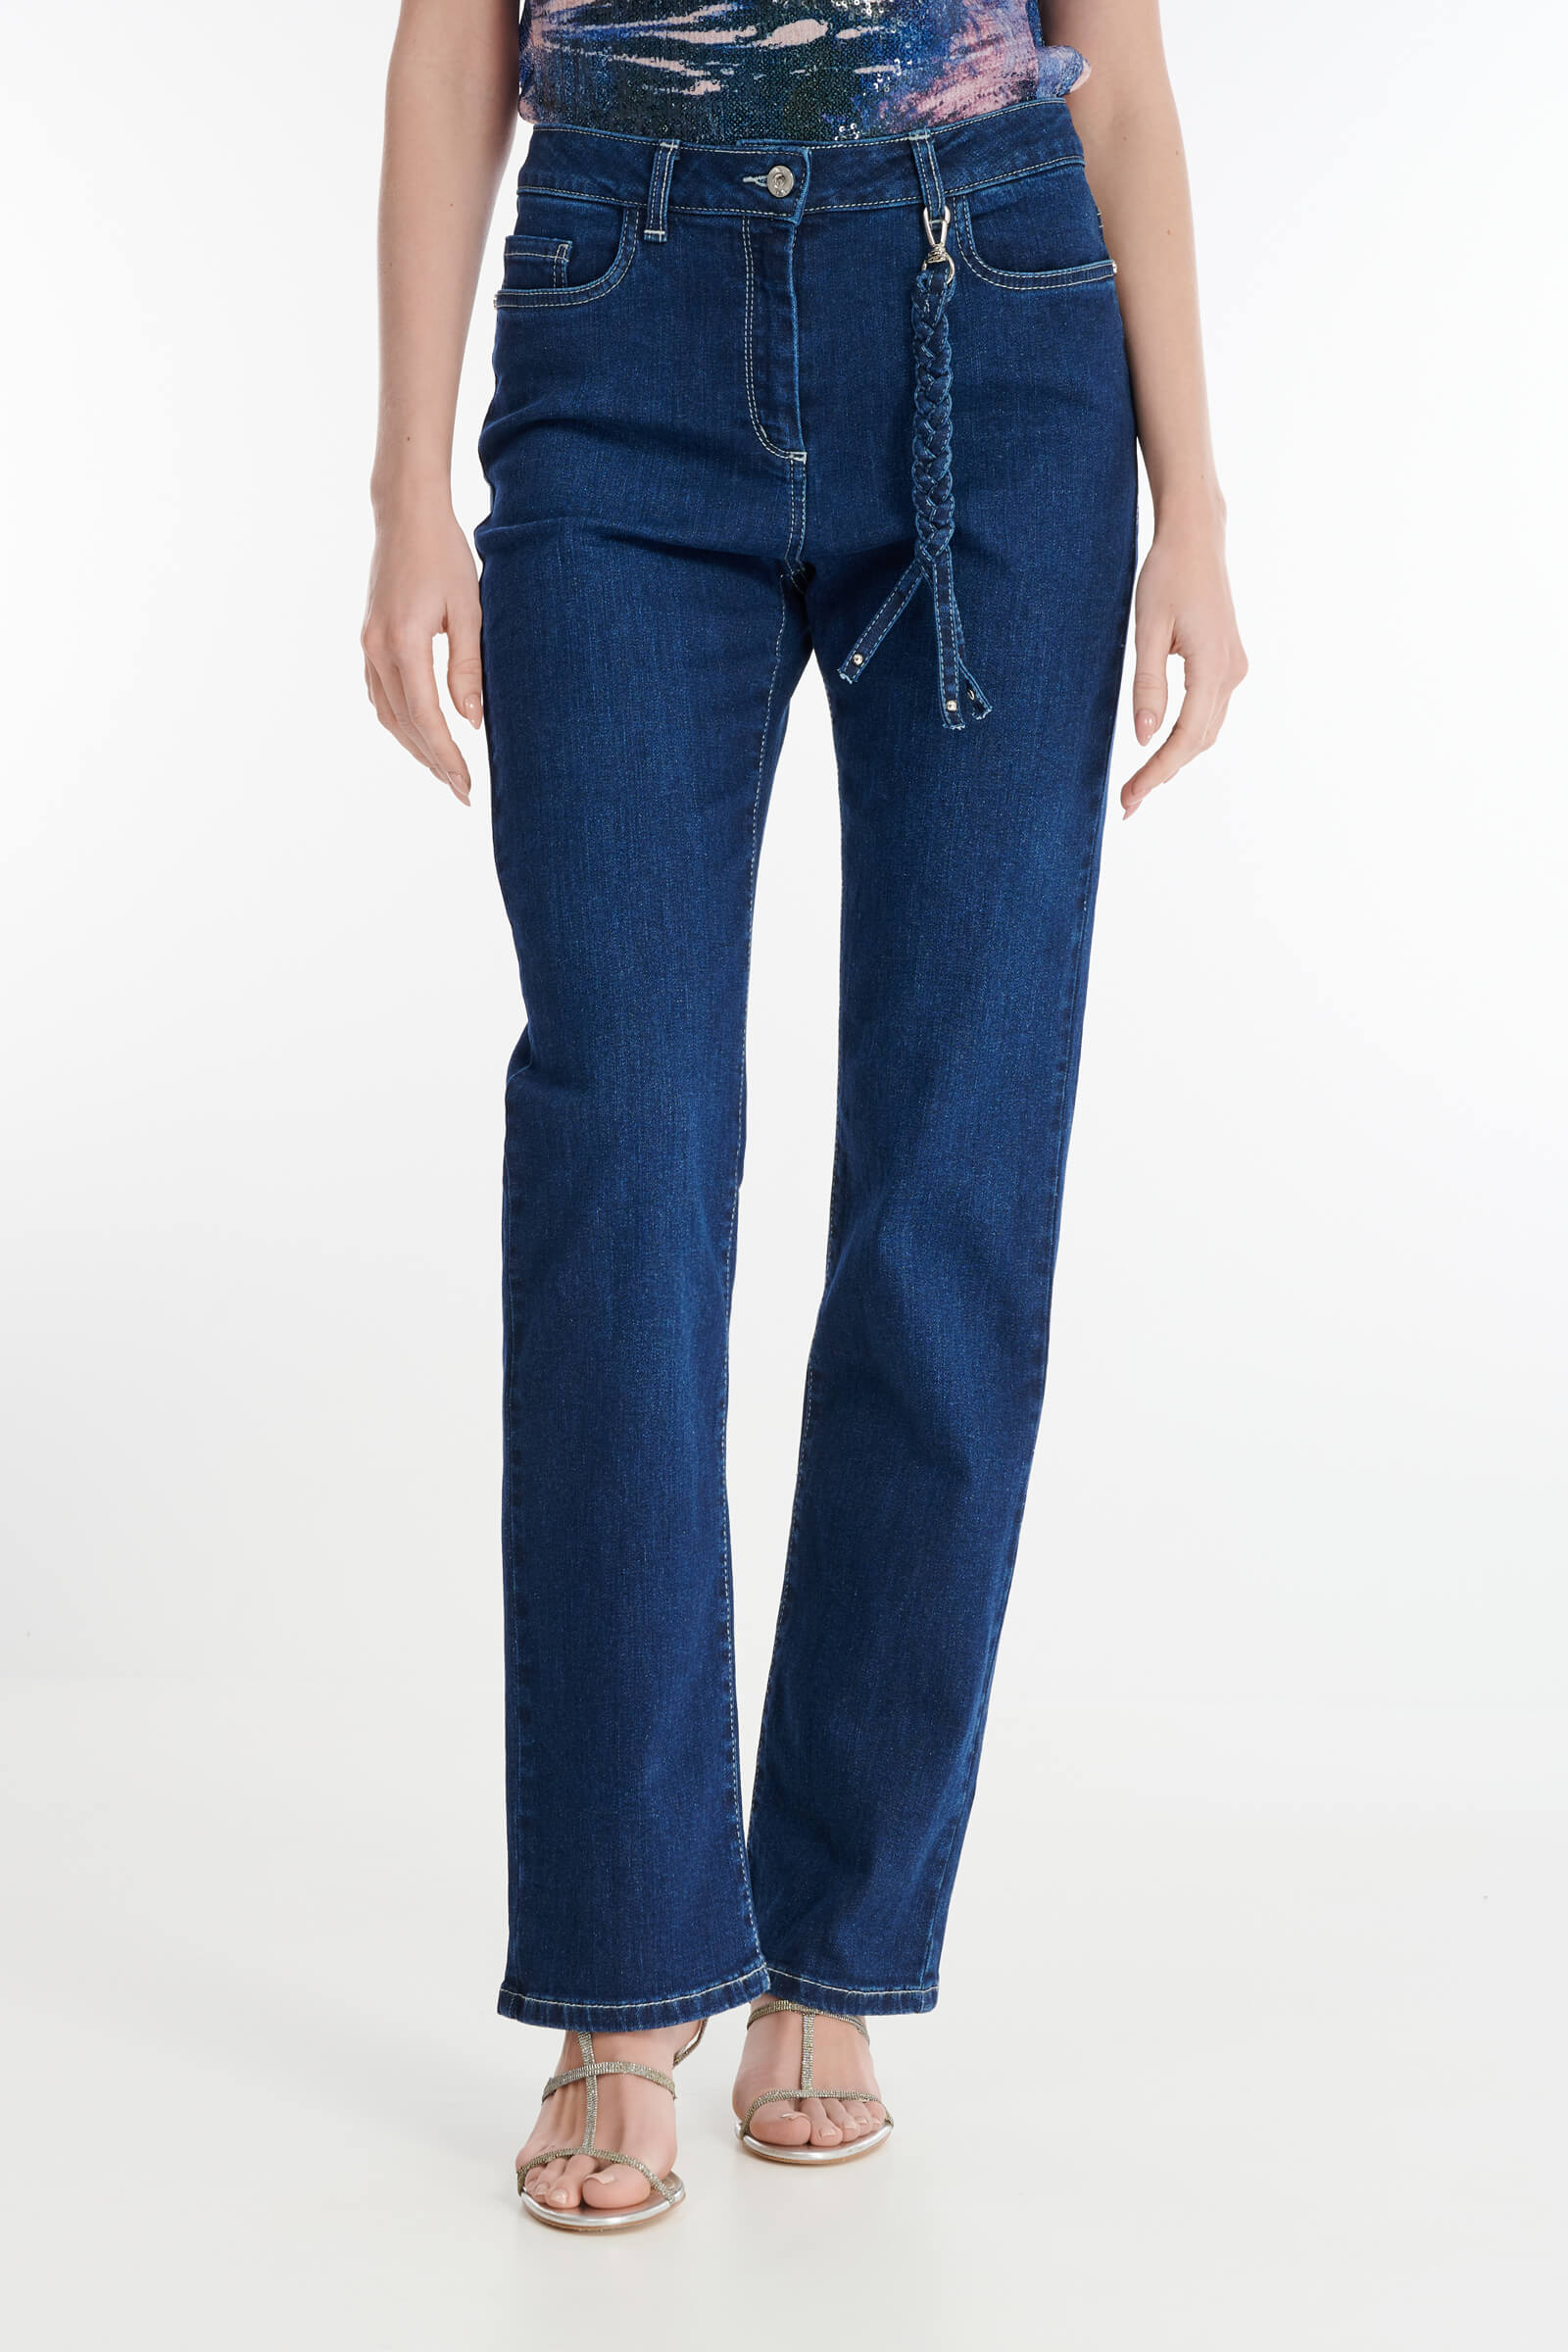 Прямые джинсы со съемным декором Цвет Синий